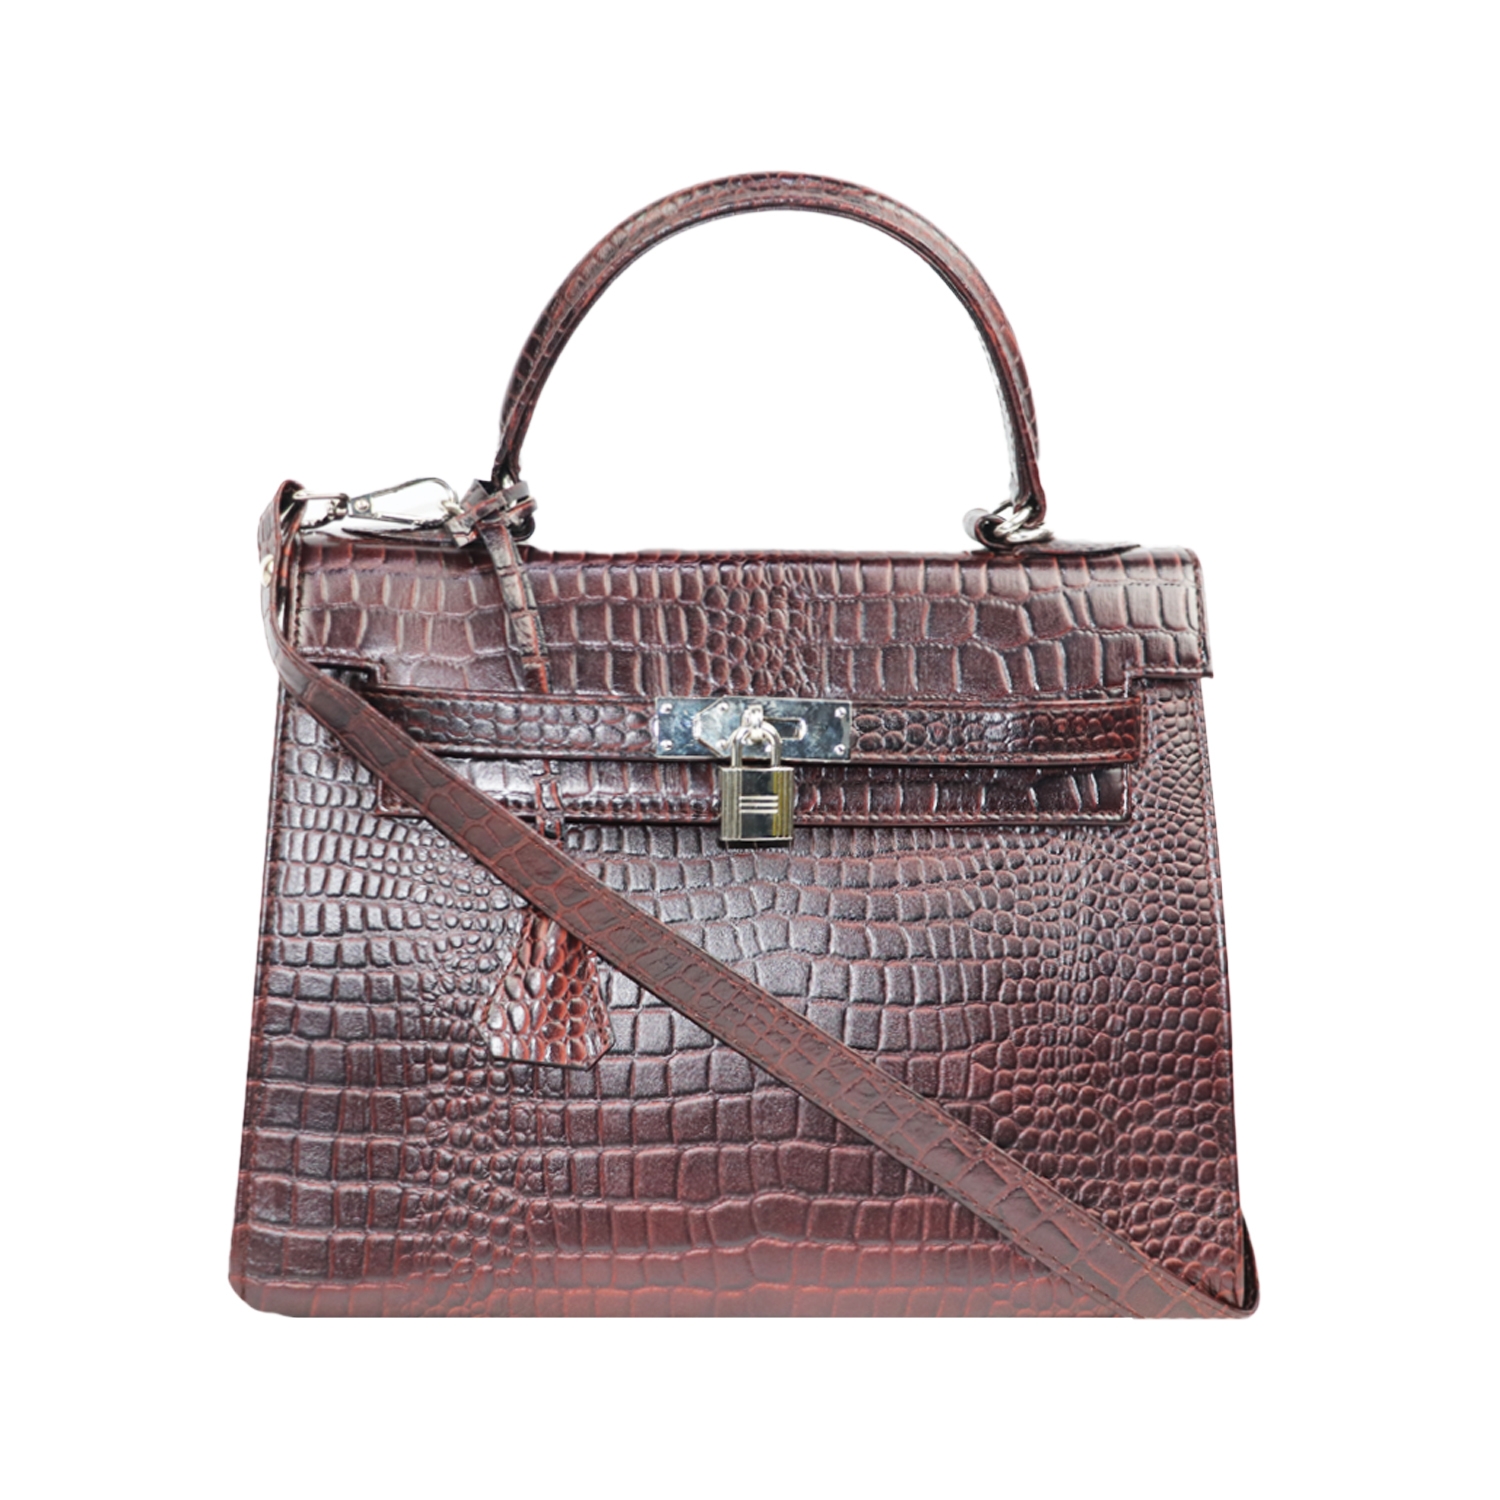 Designer Dark Brown cute handbag with unique lock